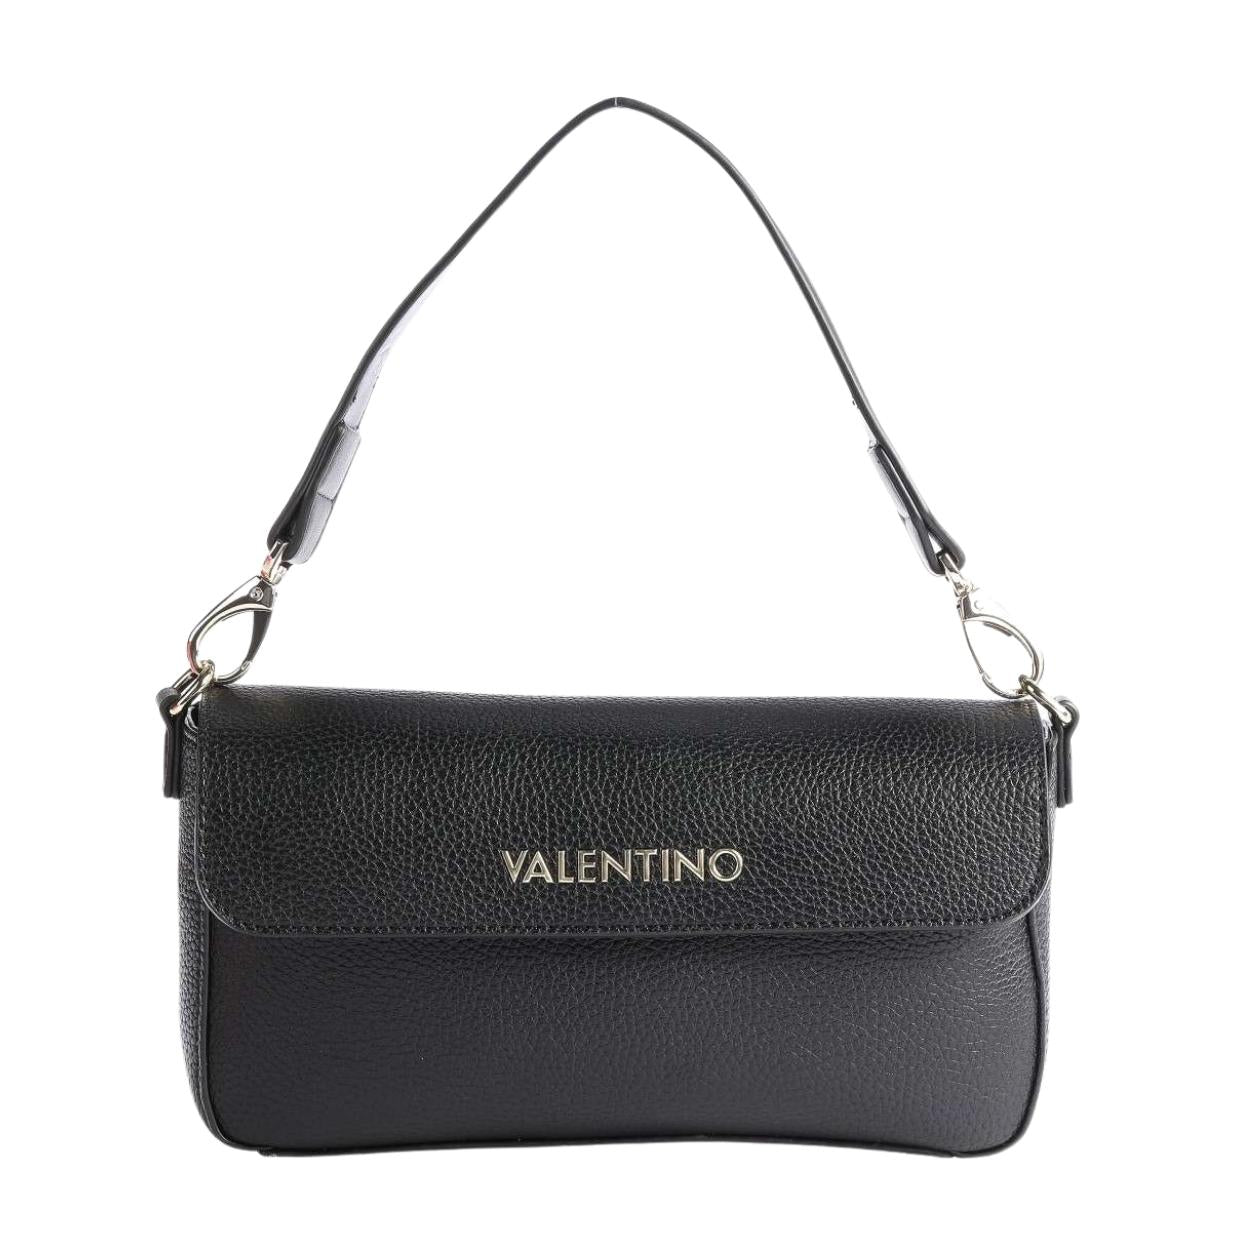 Valentino Bag Black Alexia Crossbody Bag